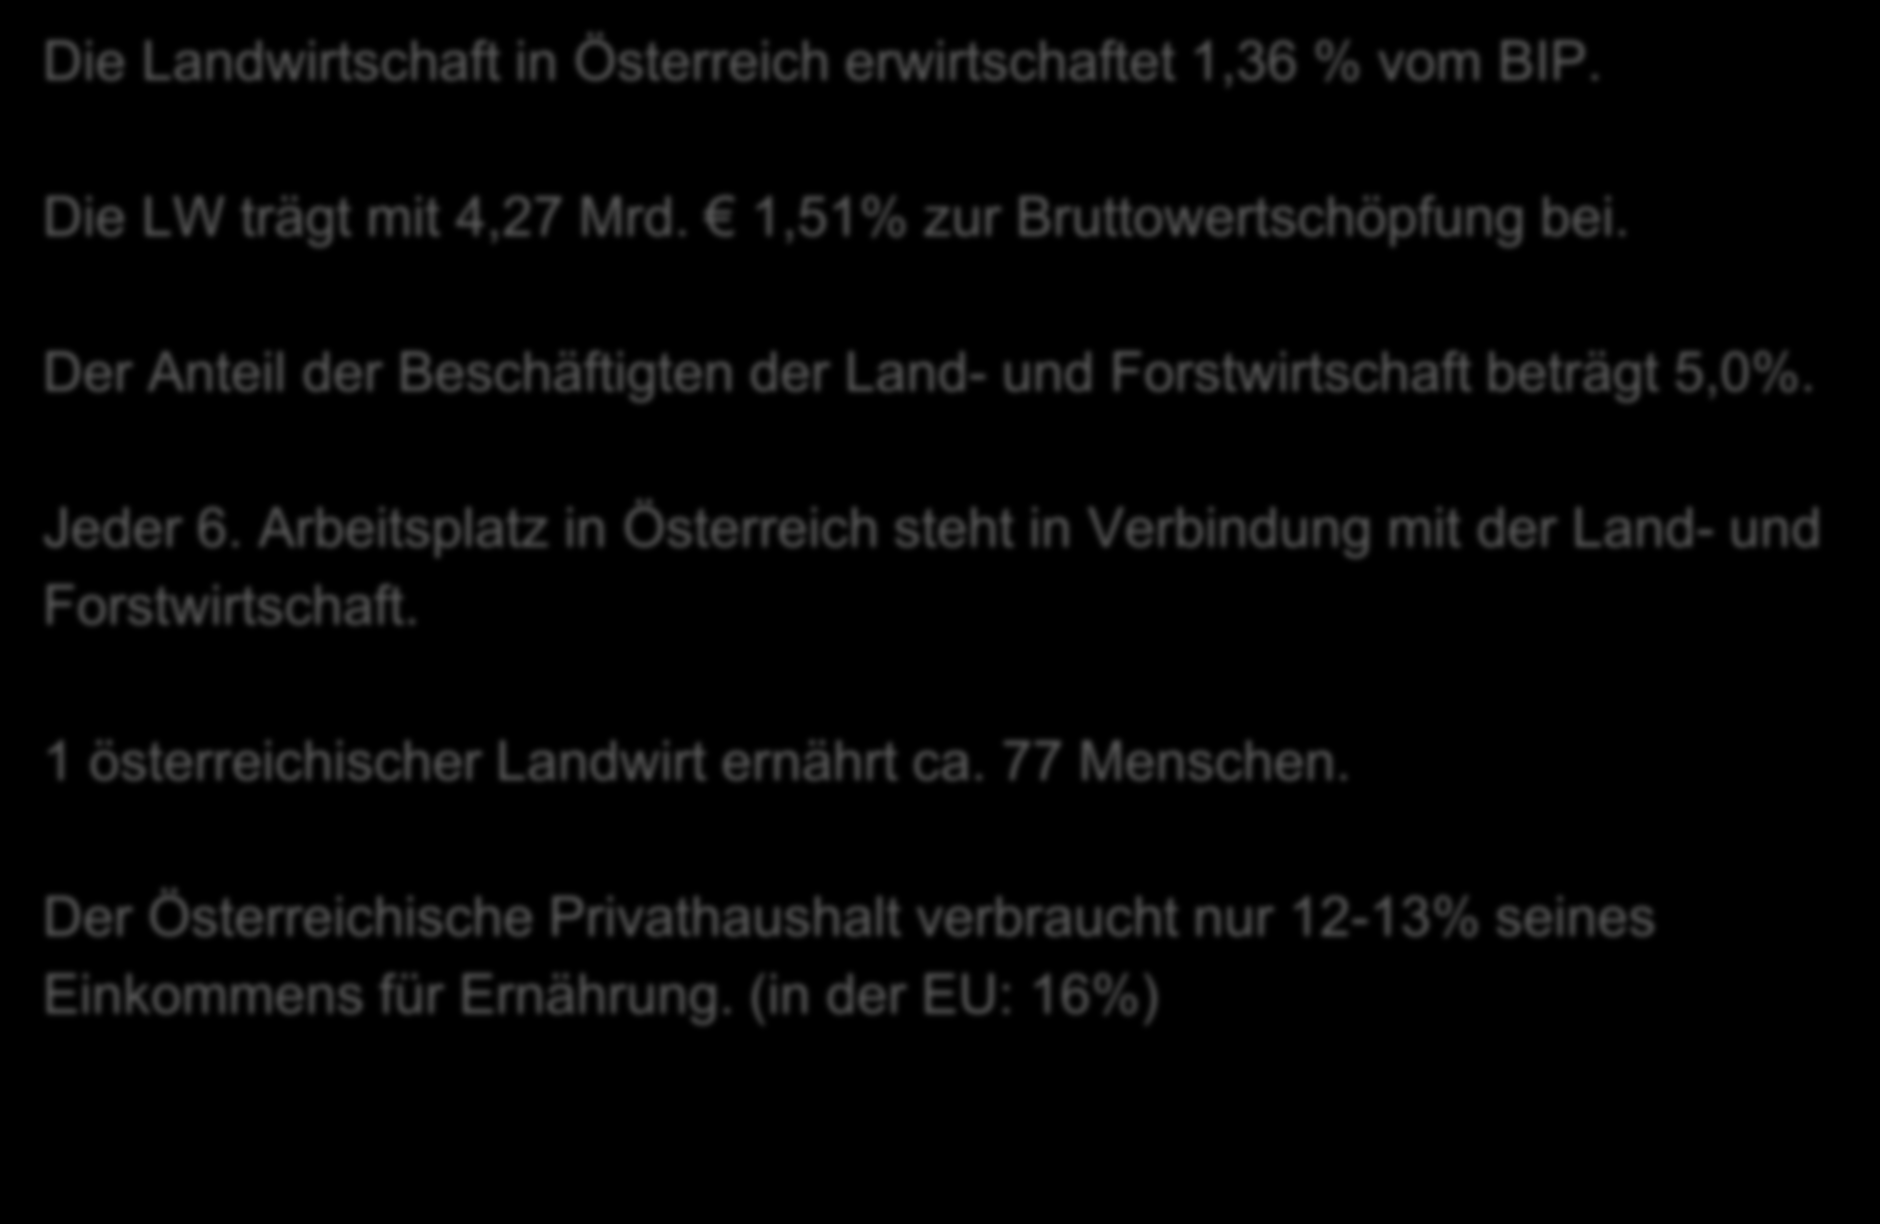 Eckdaten zur Landwirtschaft als Wirtschaftsbereich Die Landwirtschaft in Österreich erwirtschaftet 1,36 % vom BIP. Die LW trägt mit 4,27 Mrd. 1,51% zur Bruttowertschöpfung bei.